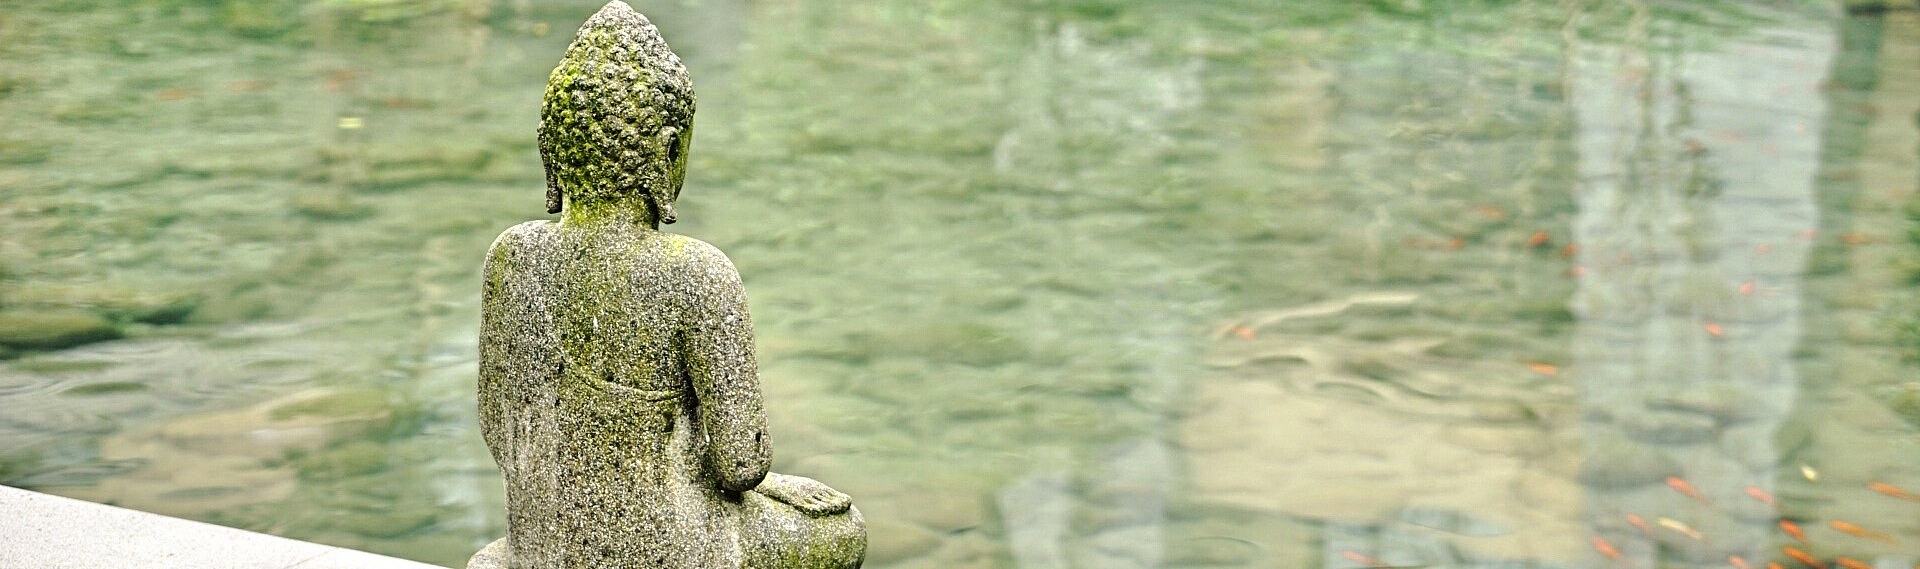 statue de boudha au bord d'un lac où nagent des poissons